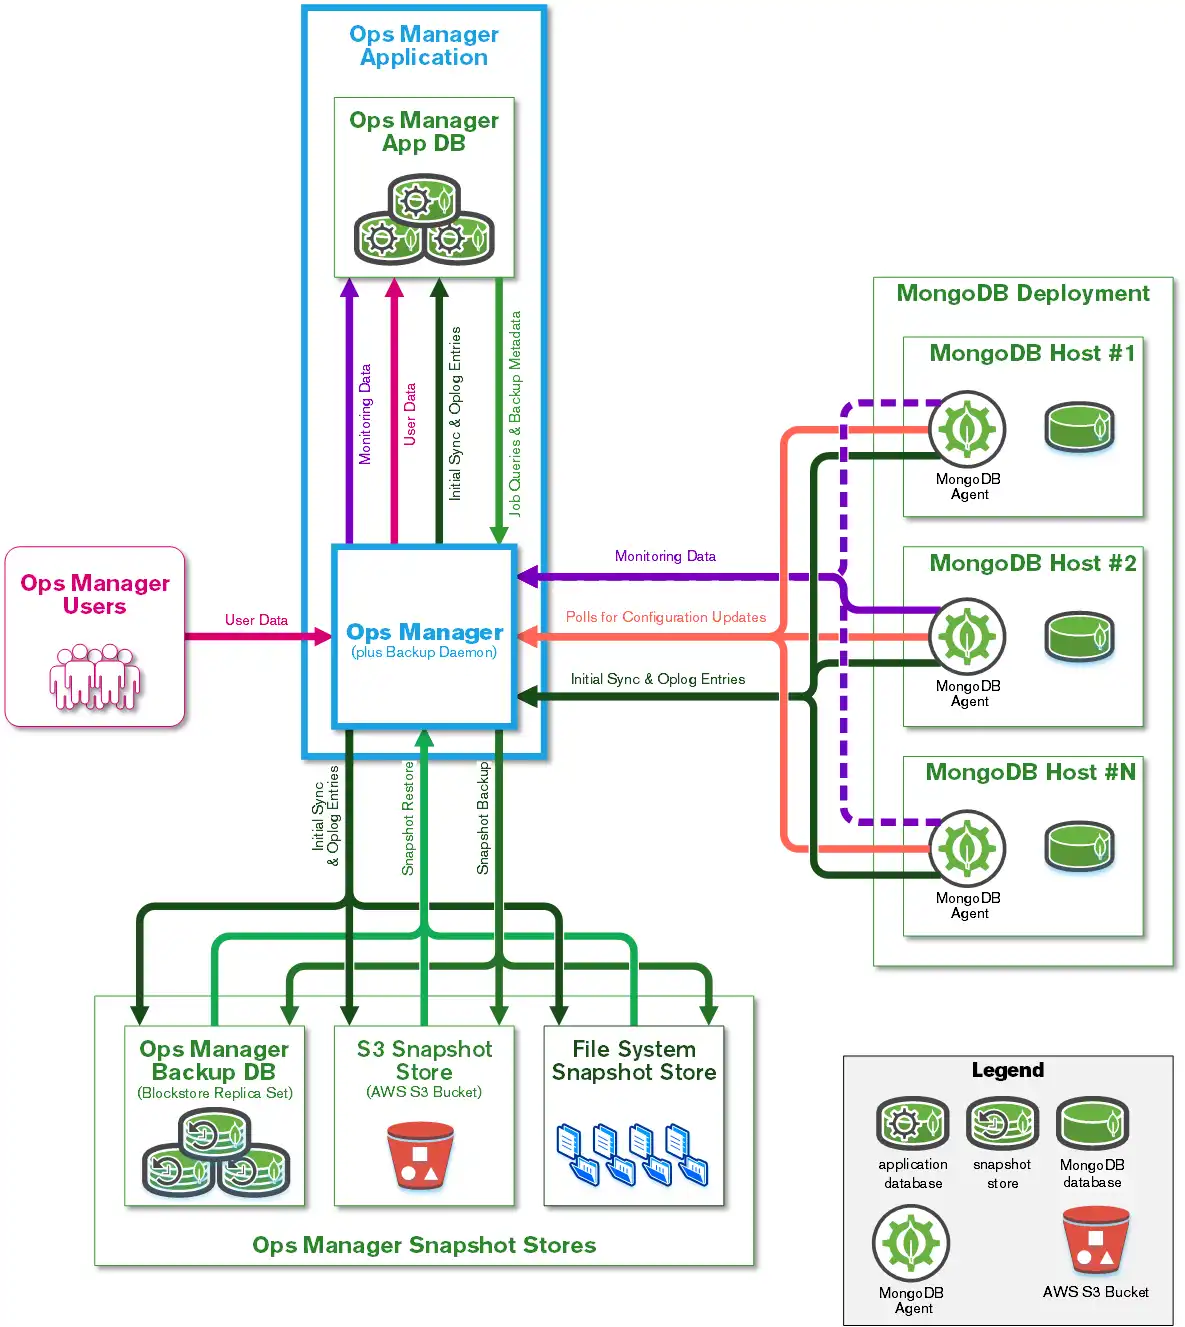 Diagrama de rede mostrando fluxos de dados entre os componentes do Ops Manager.